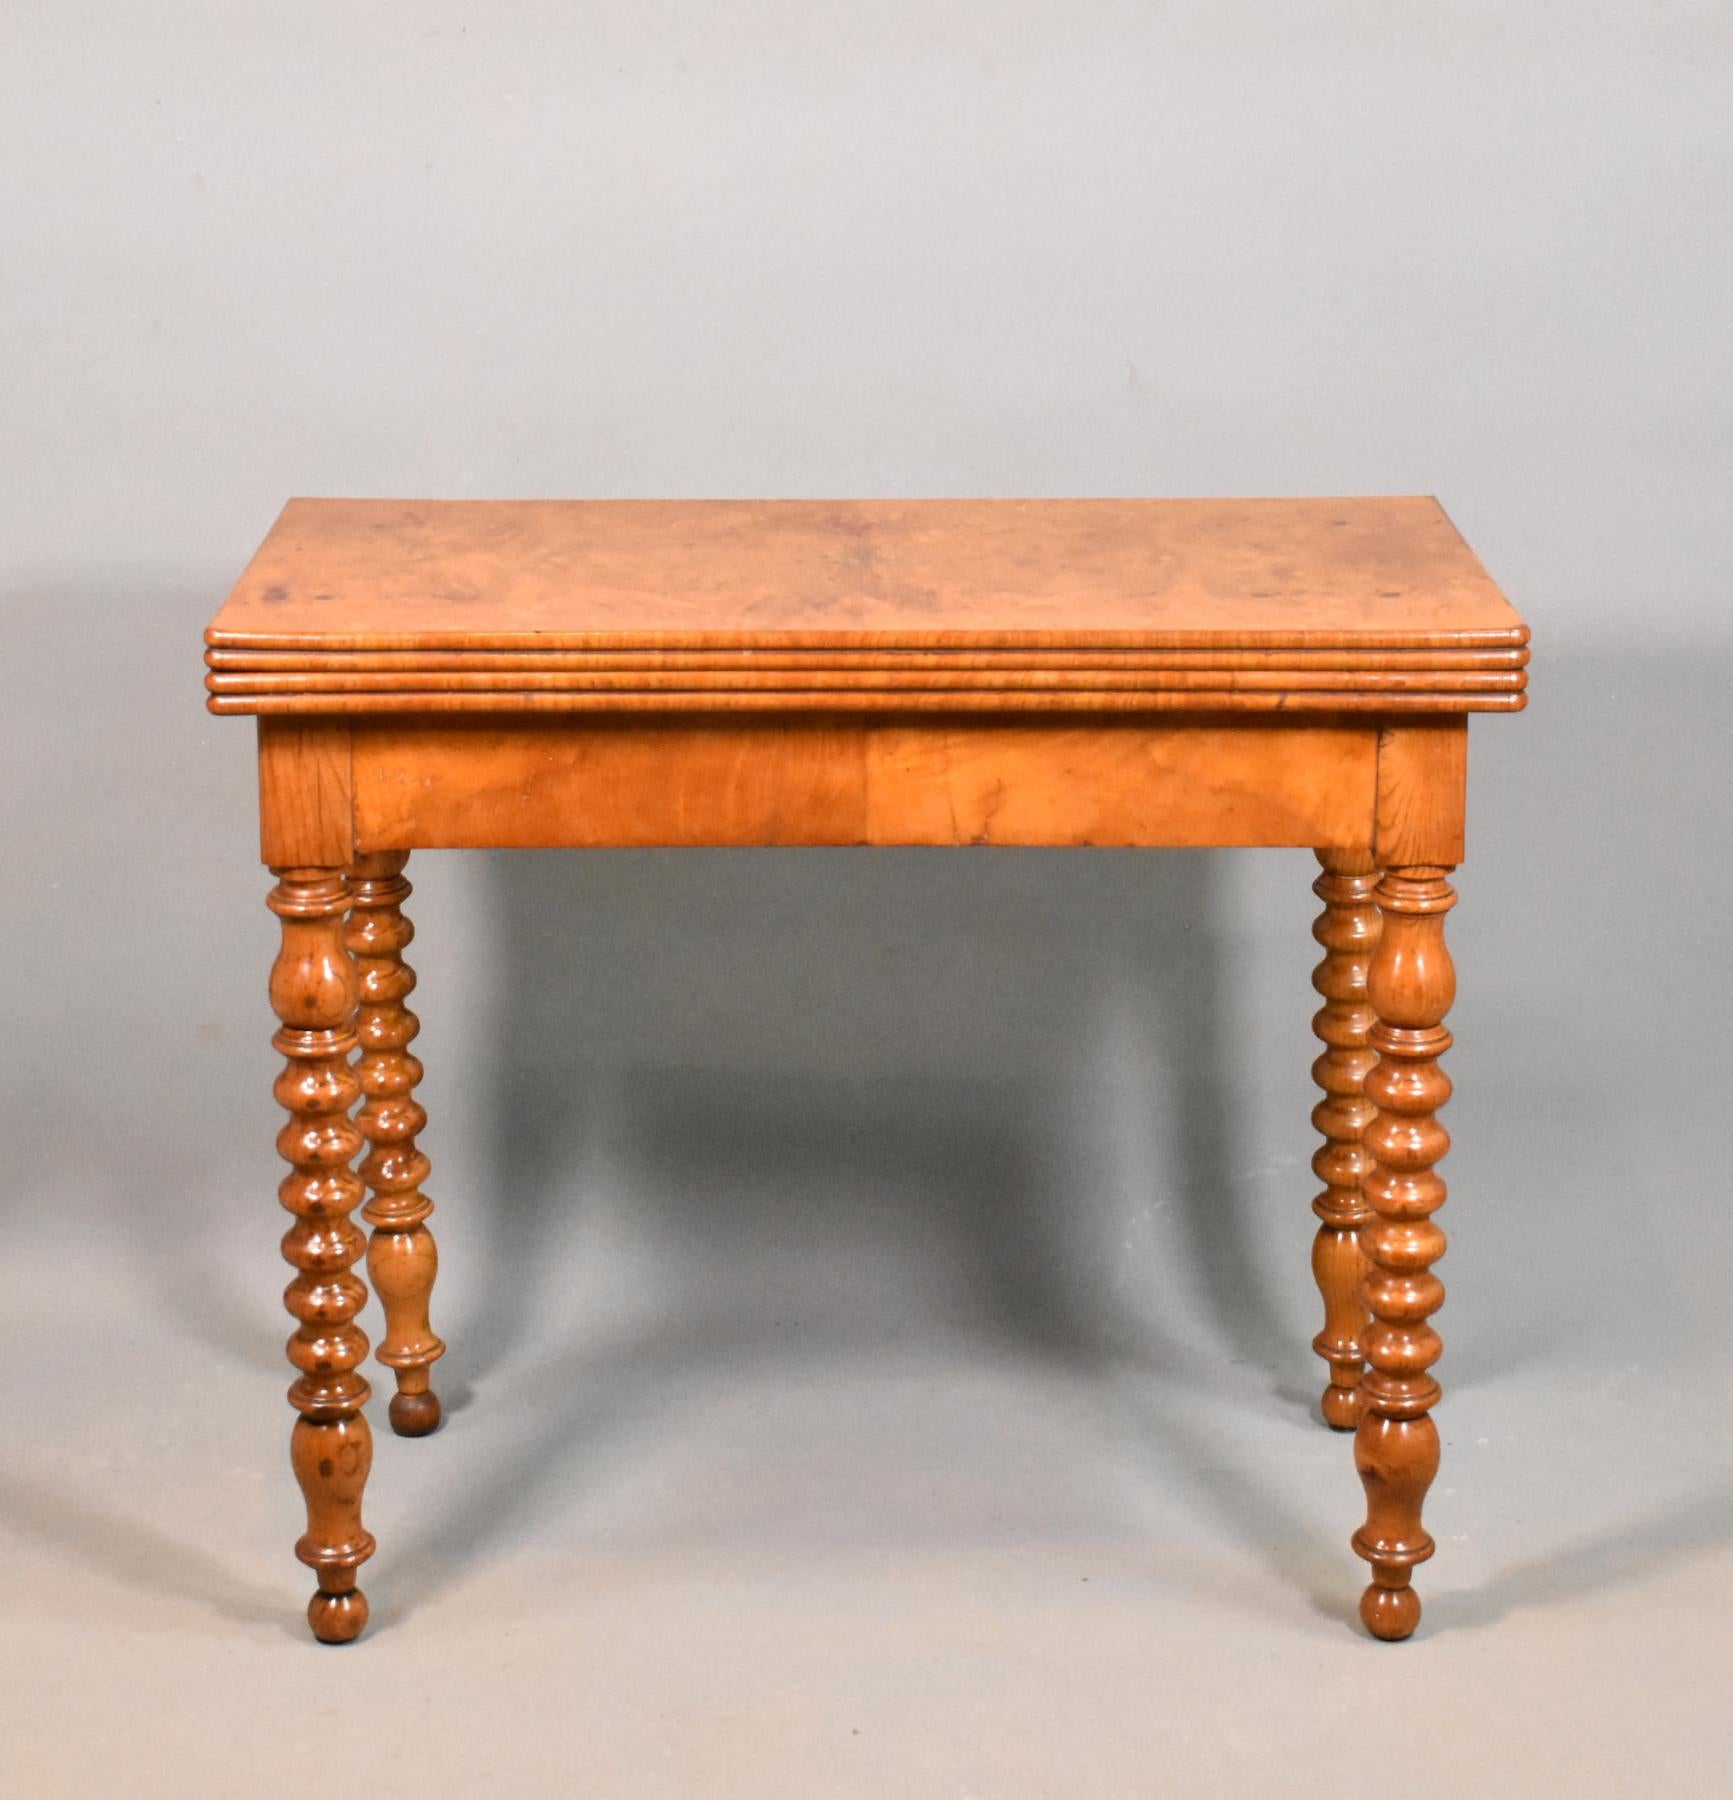 Antike Französisch Burr Ulme Folding Spiele Tisch 19. 

Dieser wunderschön gemaserte Spieltisch aus Wurzelrinde ist an der Ober- und Unterseite mit viertelgleichem Wurzelrindenfurnier versehen. 

Er hat einen wulstigen, profilierten Außenrand und